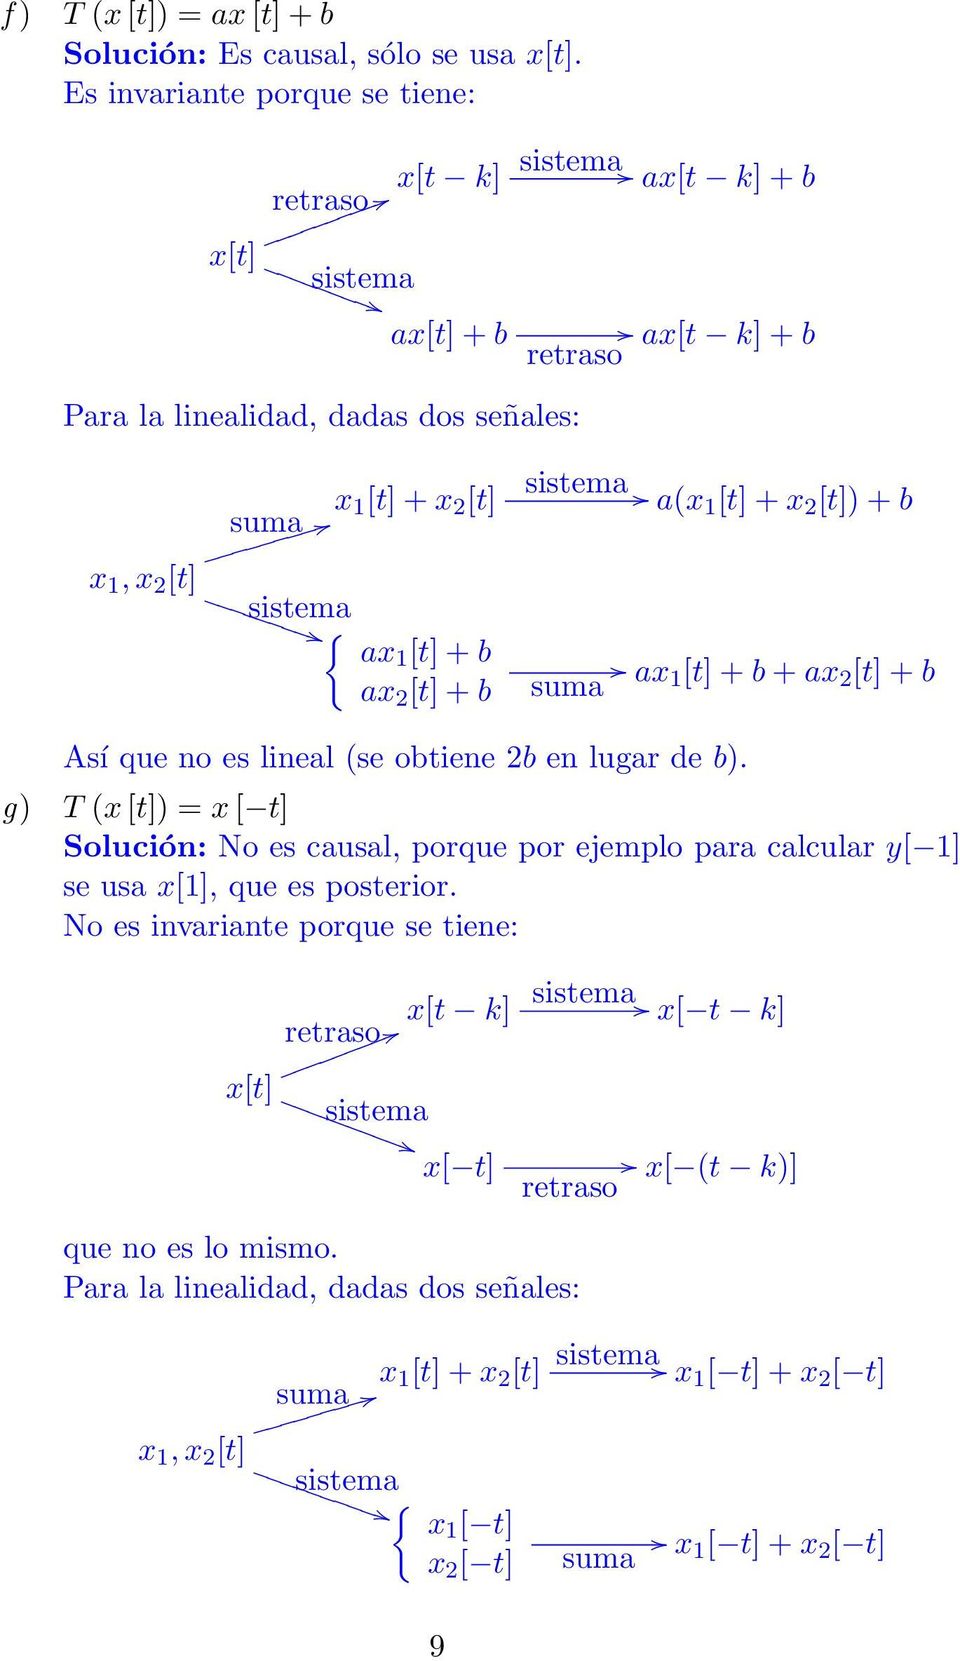 a(x 1 [t] + x [t]) + b suma ax 1 [t] + b + ax [t] + b Así que no es lineal (se obtiene b en lugar de b).